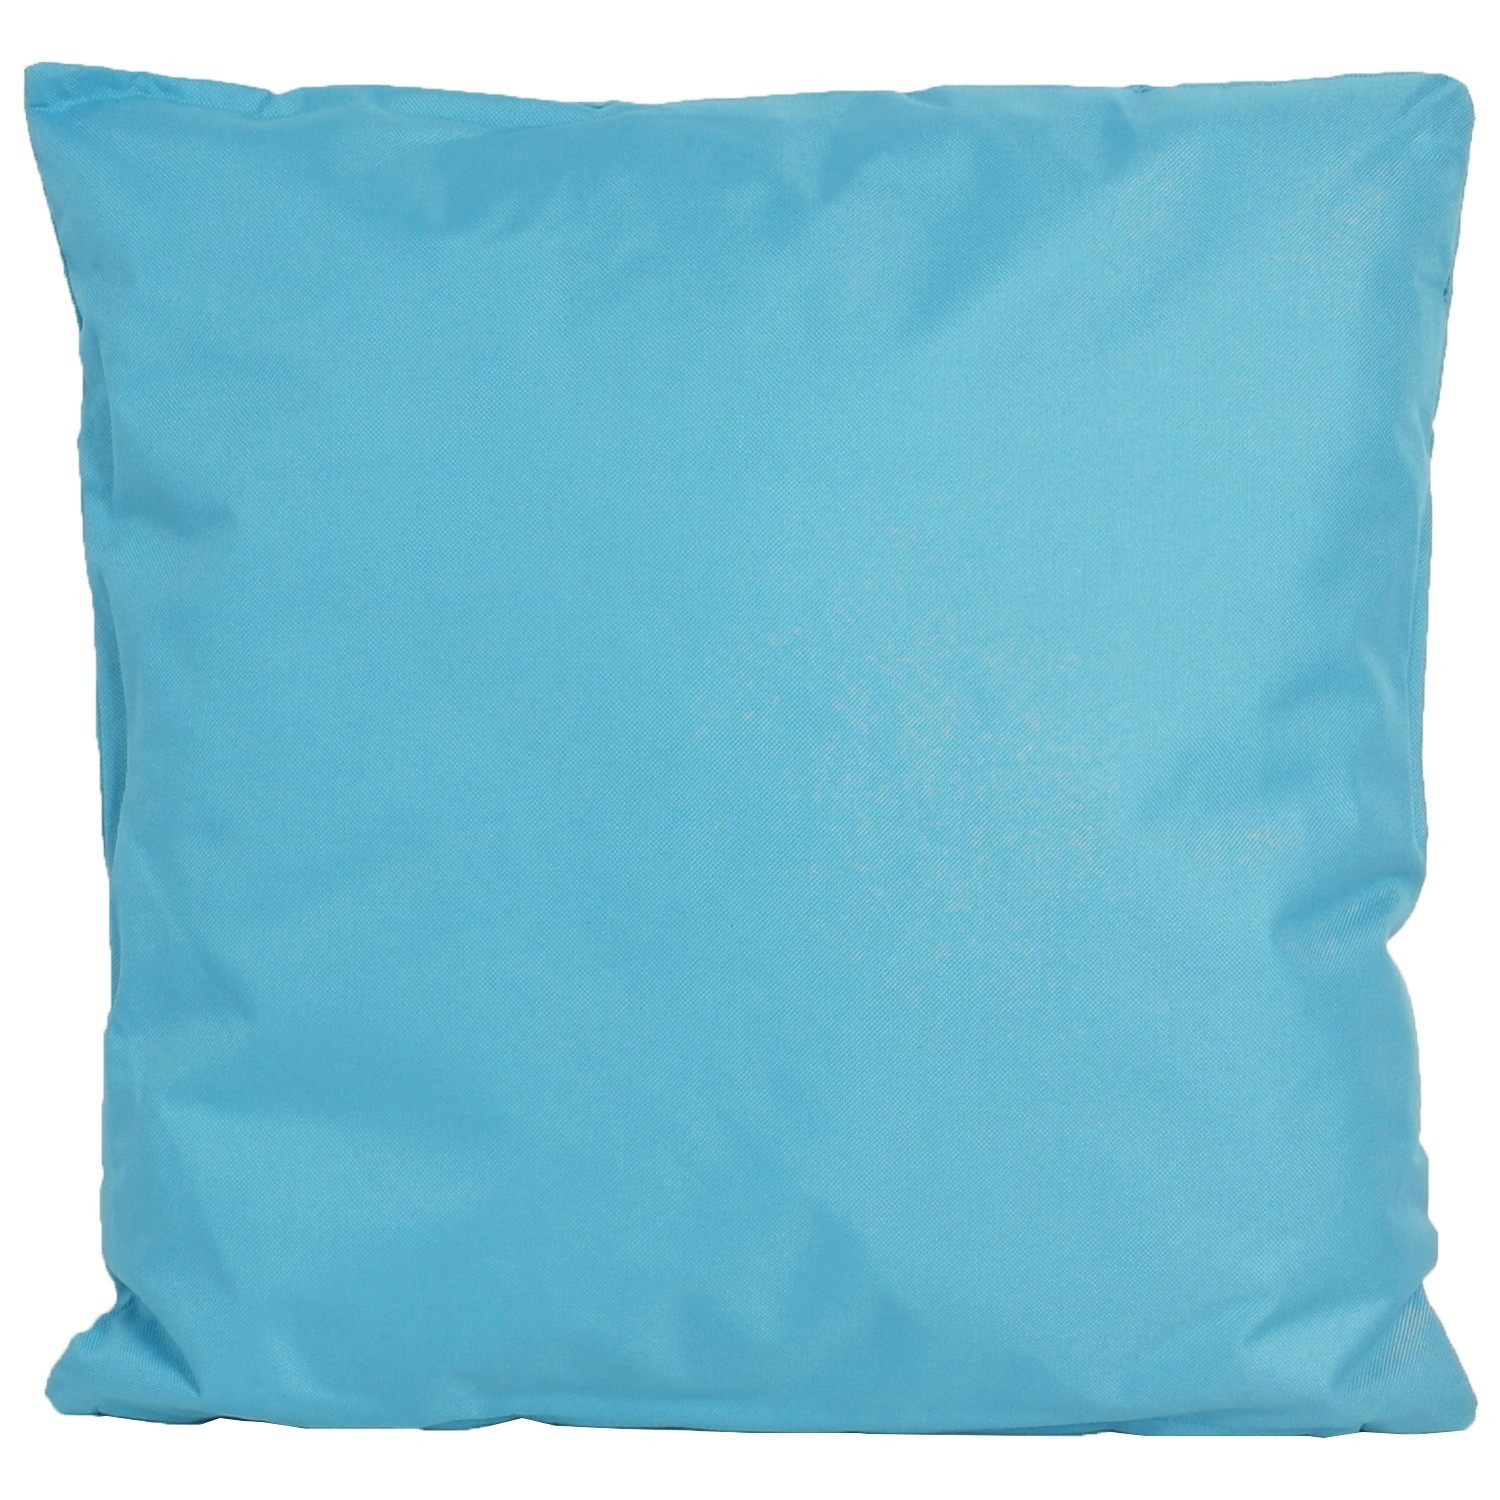 1x Bank-Sier kussens voor binnen en buiten in de kleur lichtblauw 45 x 45 cm